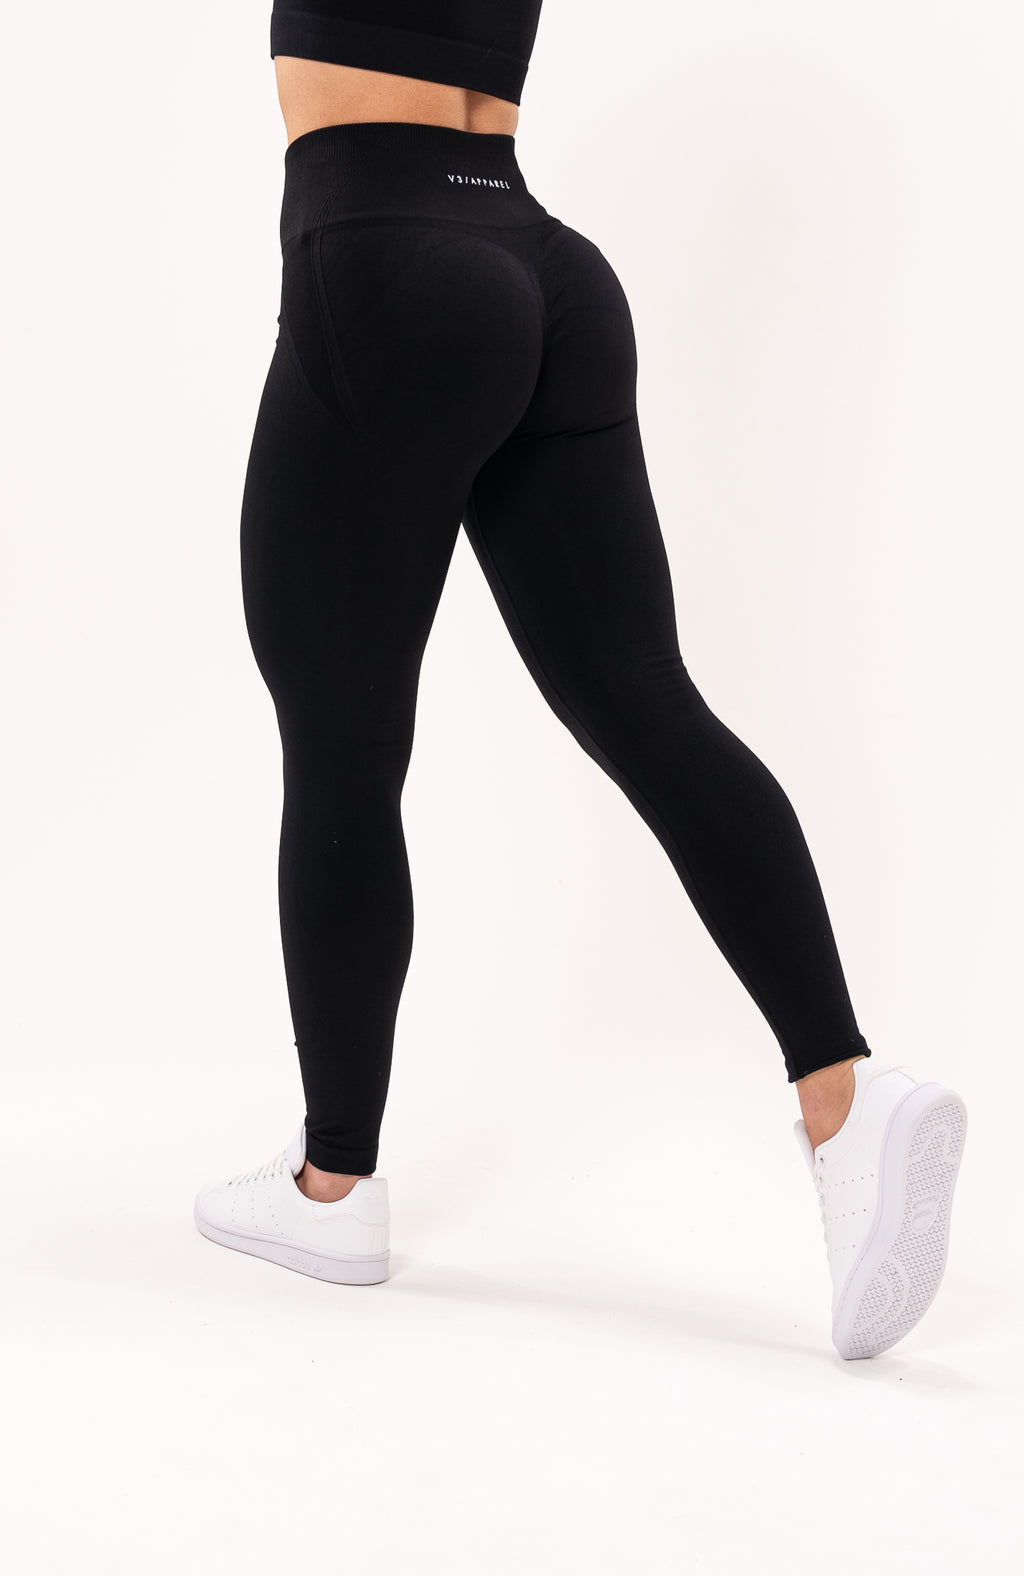 Hot Sale Scrunch Butt Lift Leggings Women High Waist Fitness Yoga